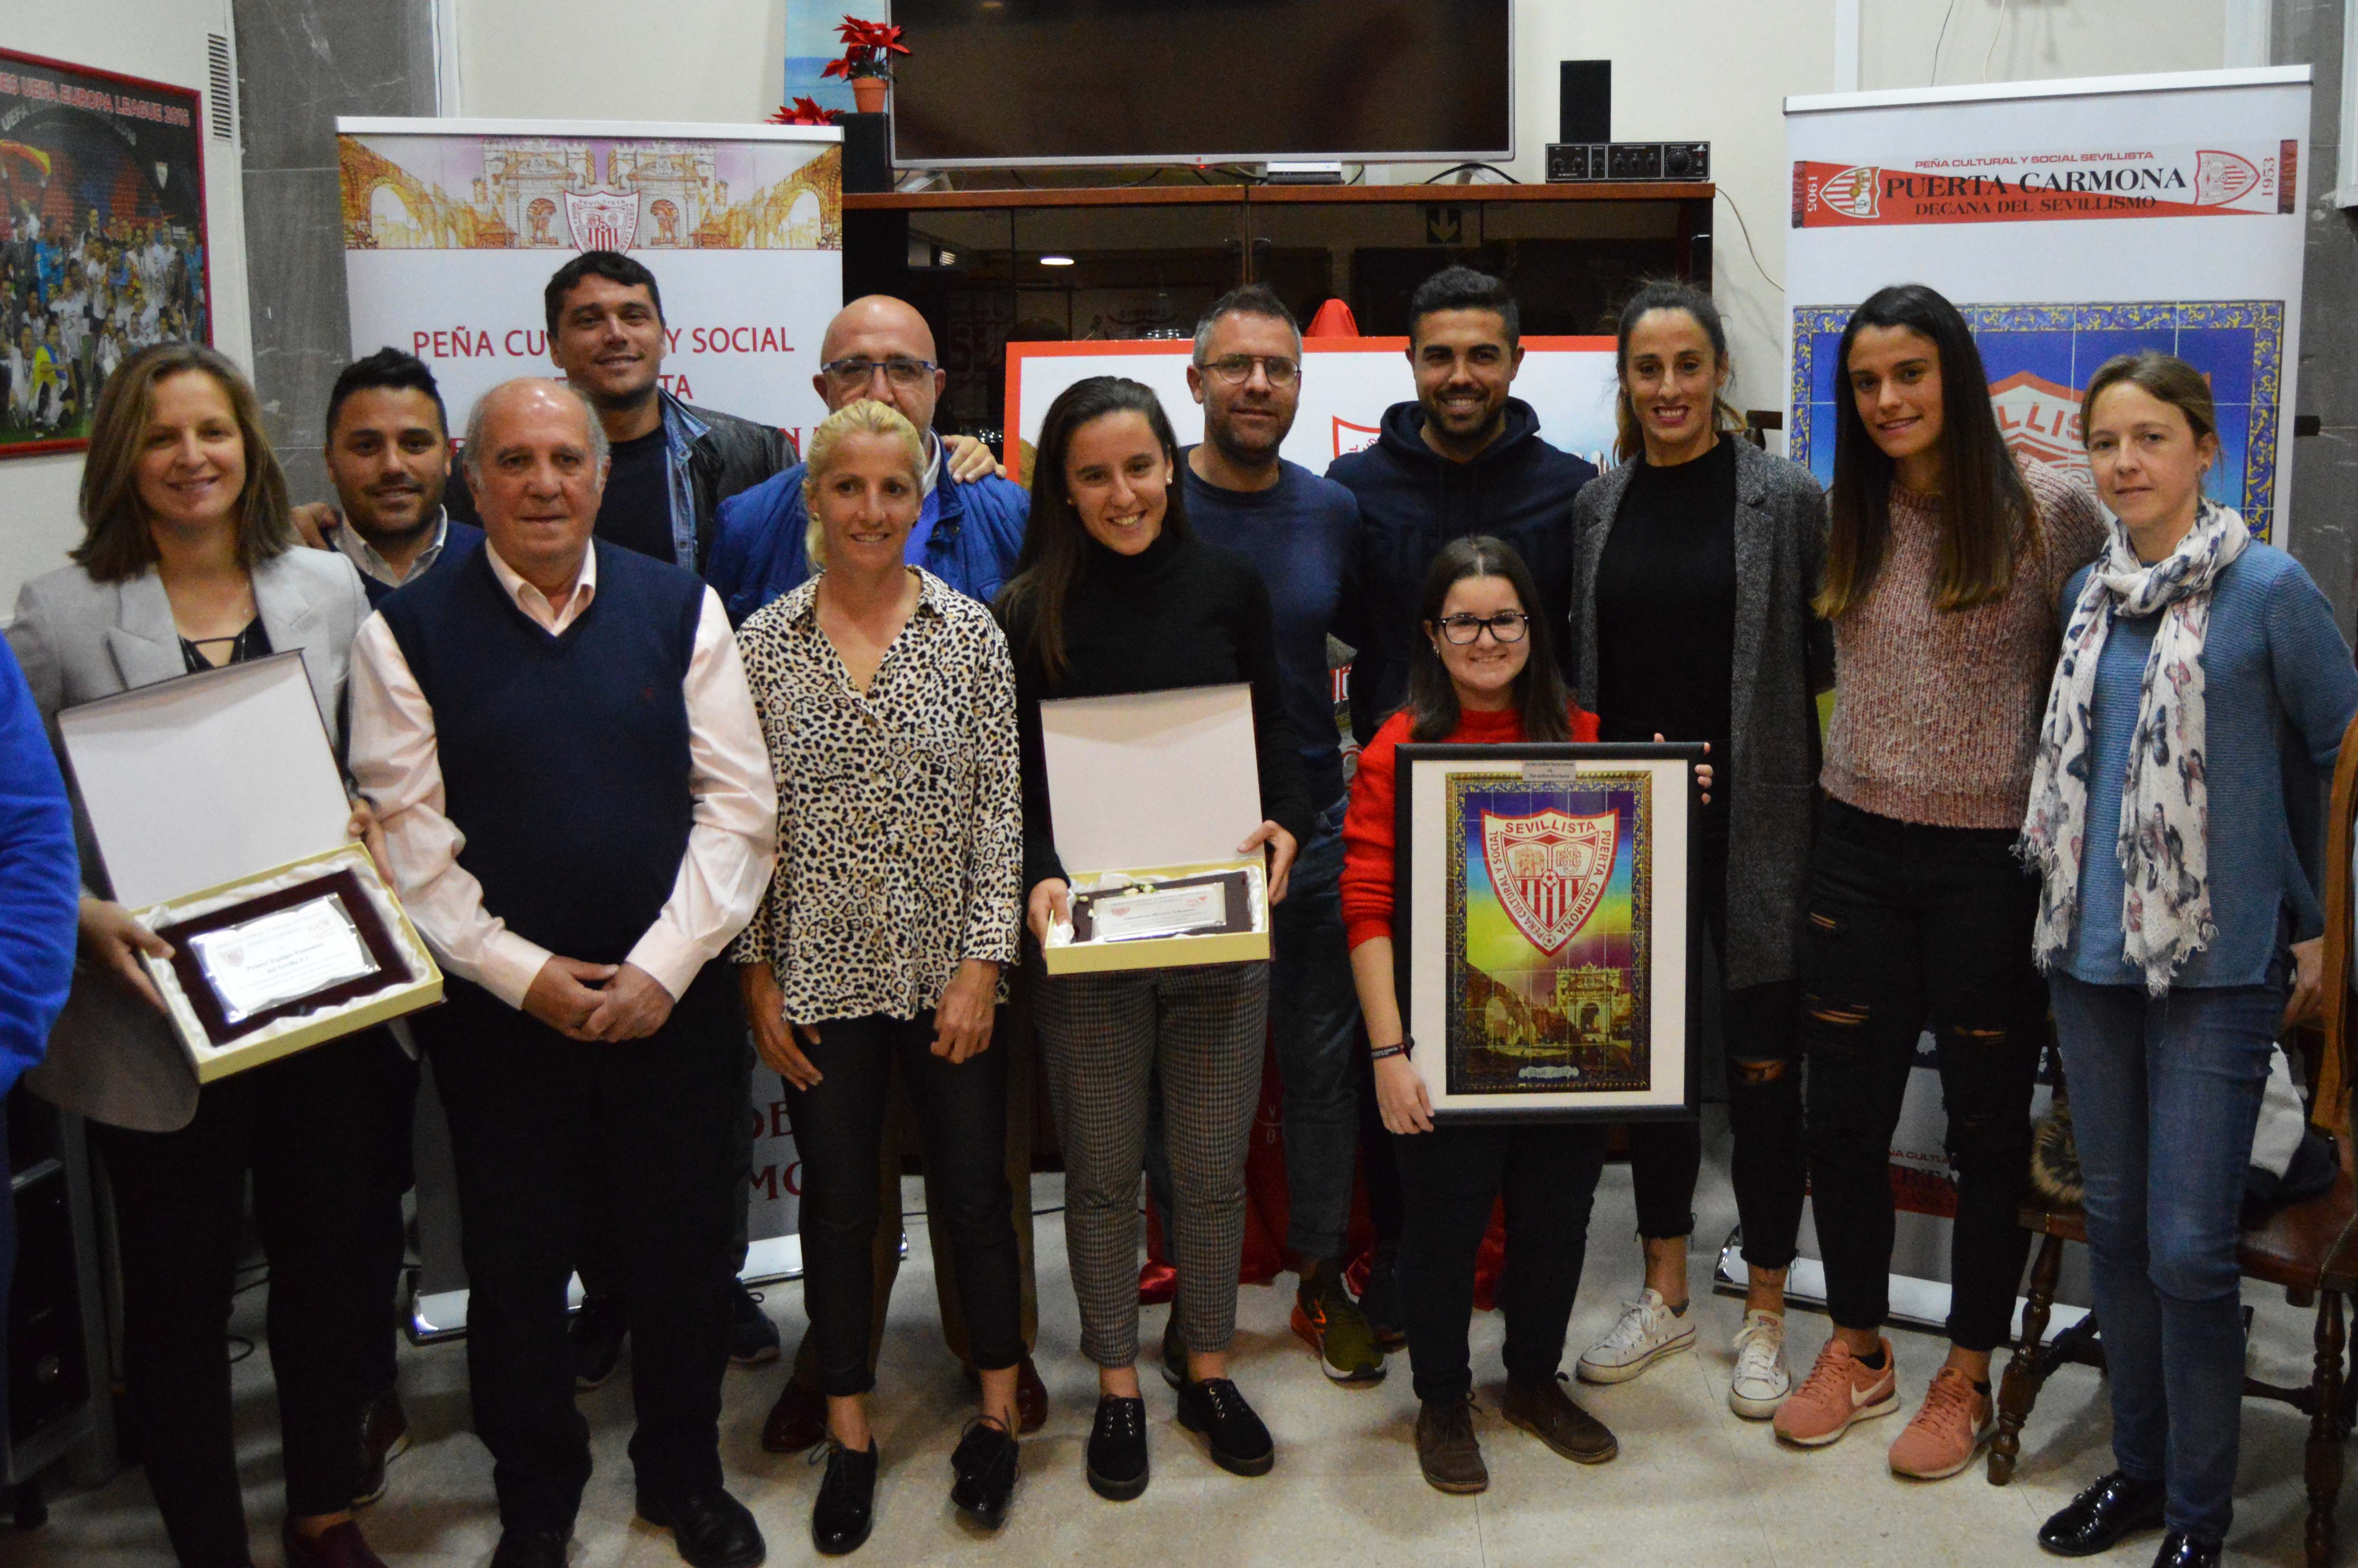 Representantes del Sevilla FC Femenino y de la PS Alicia Fuentes posan con sus respectivos obsequios tras el reconocimiento en la PS Puerta Carmona